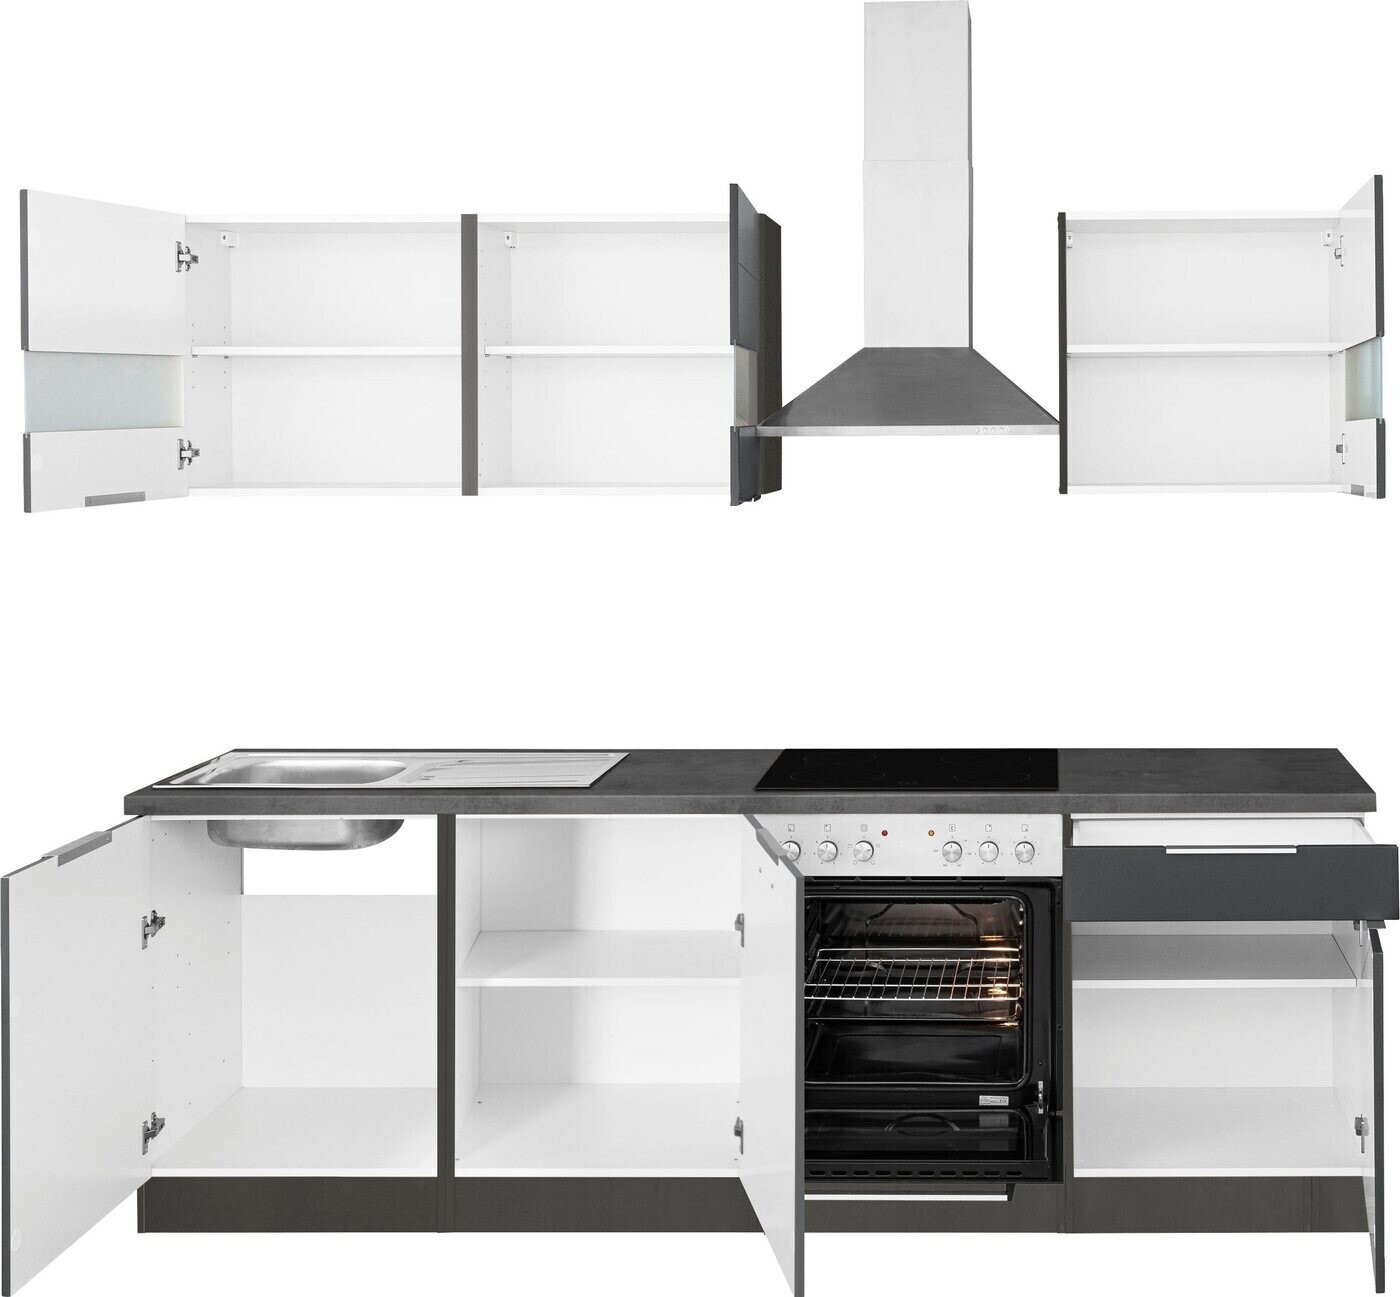 Held Möbel Komplettküchen-Sets | bei grafit Preisvergleich matt Luhe cm oxid weiß 1.130,49 € ab stone 240